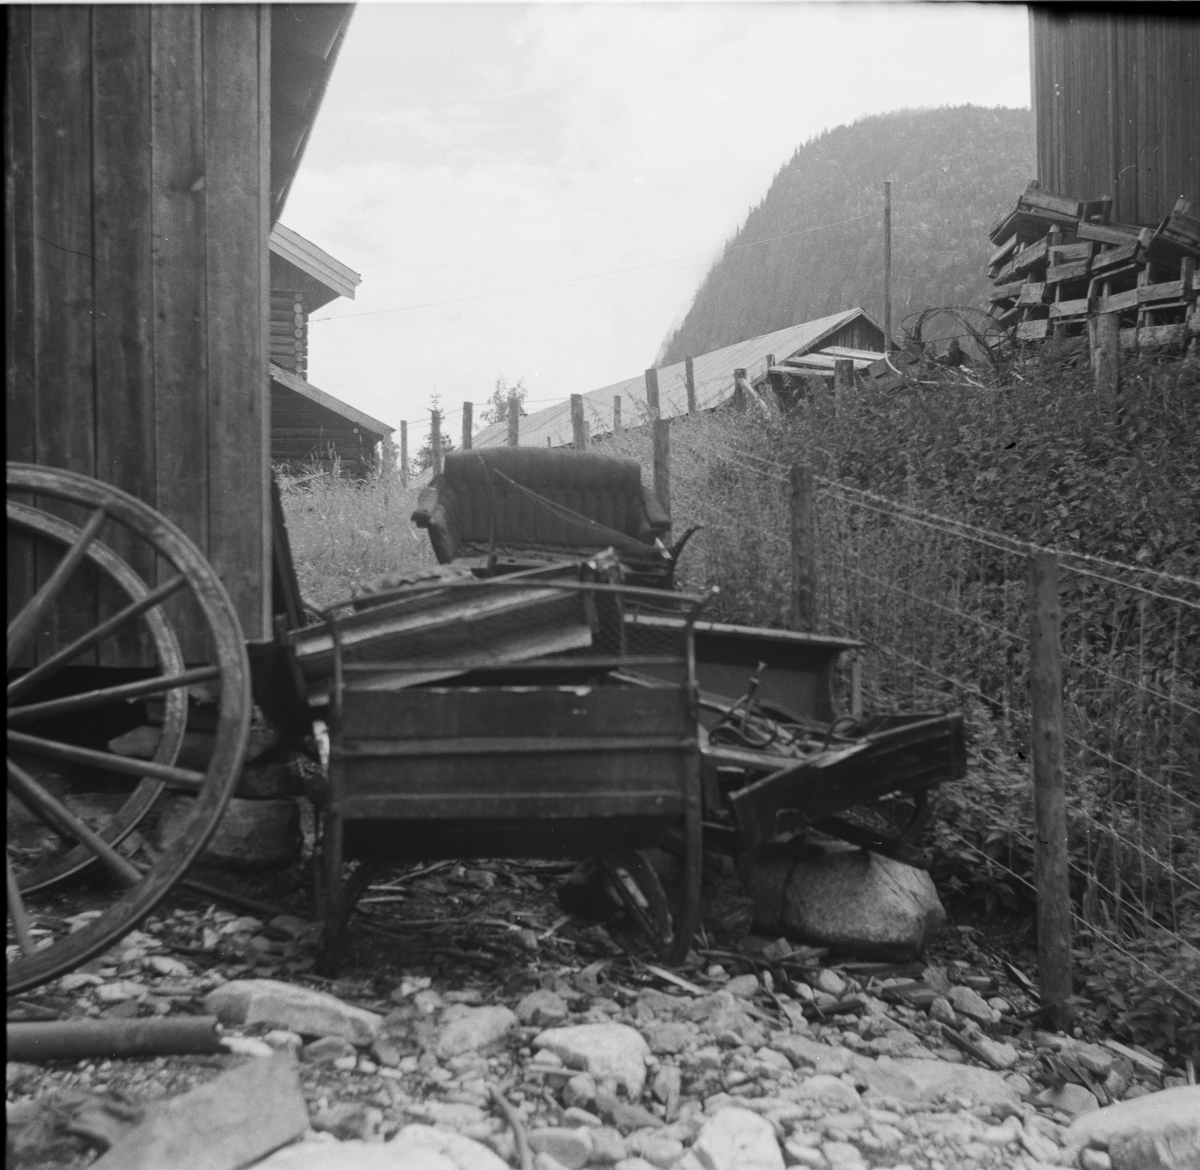 Rester av gamle sleder henslengt nær Nesbyen stasjon.